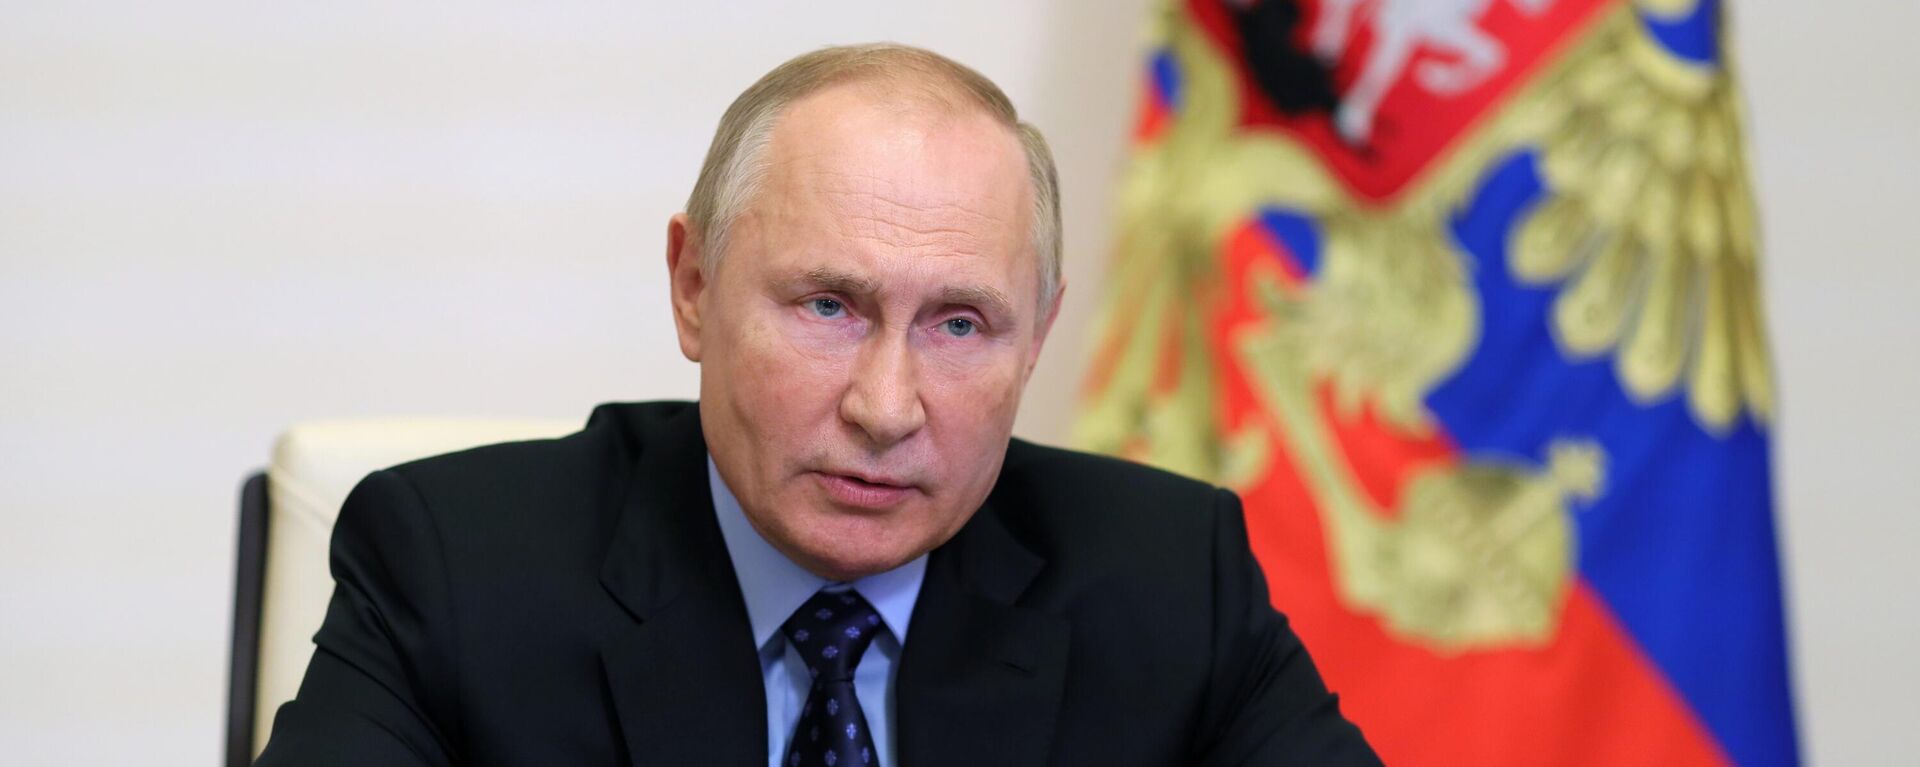 Президент РФ В. Путин провел совещание по вопросам освоения ресурсного потенциала полуострова Ямал - Sputnik Азербайджан, 1920, 27.10.2021